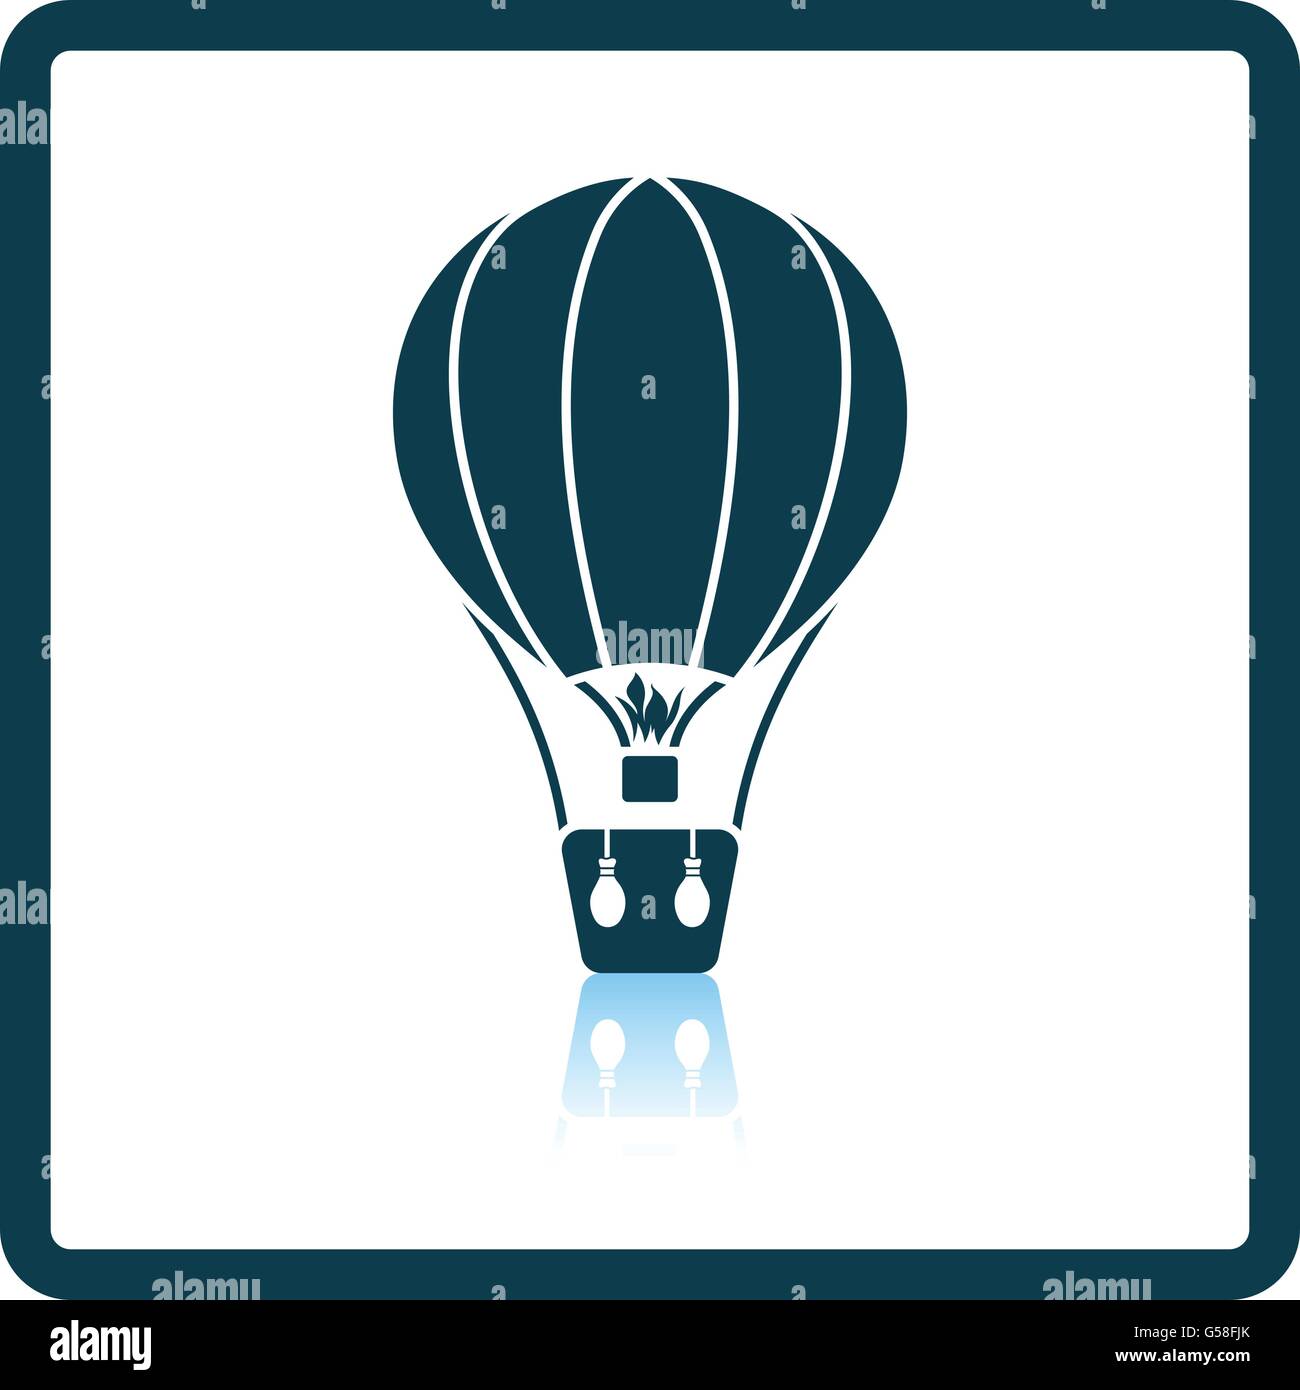 Hot air balloon icon. Shadow reflection design. Vector illustration. Stock Vector